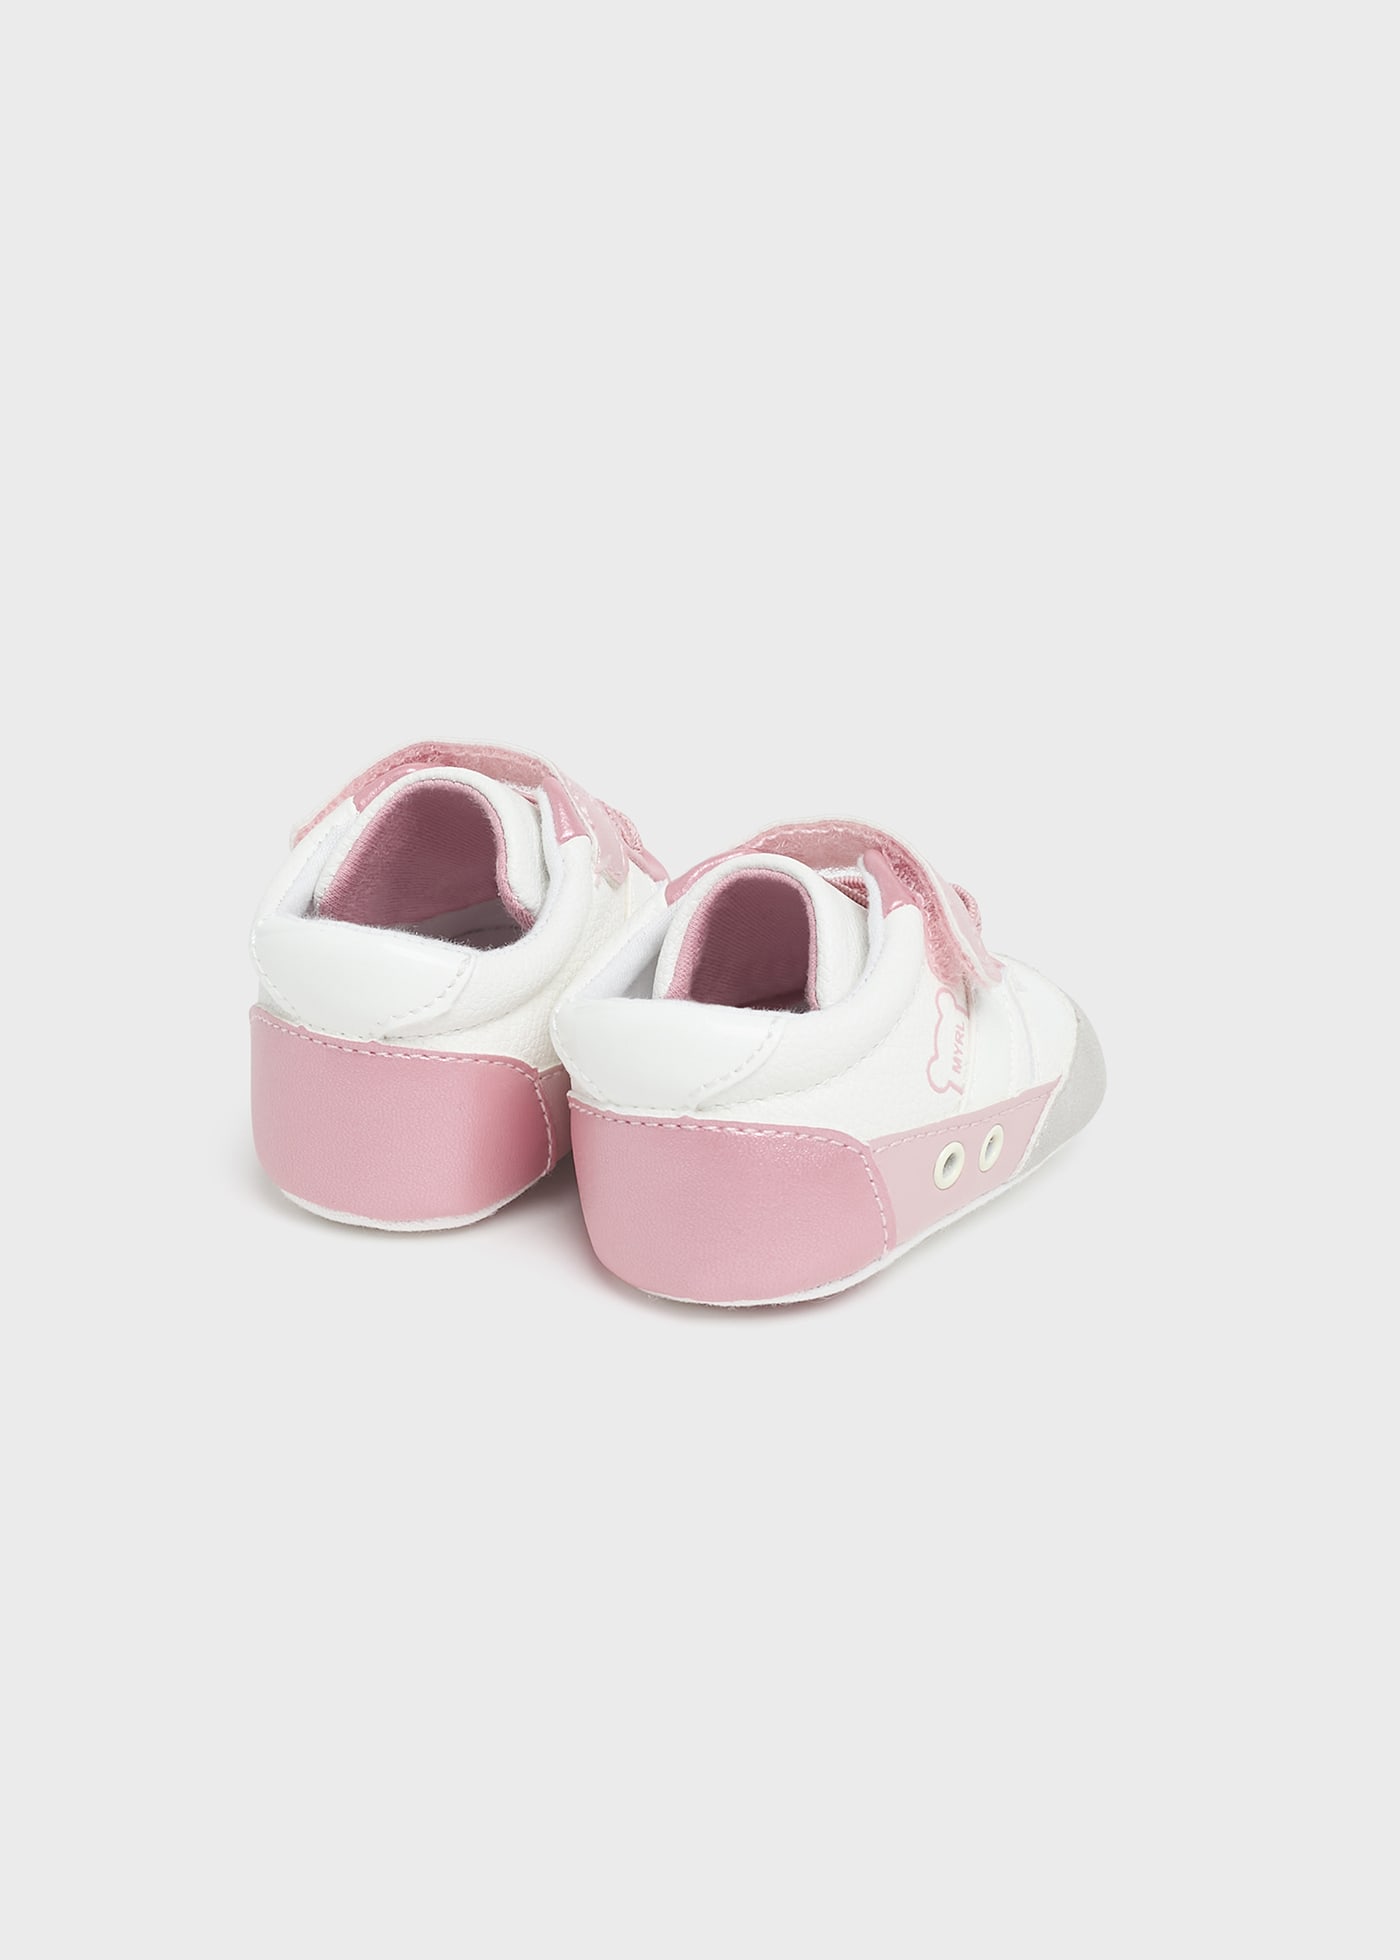 Newborn Striped Shoes